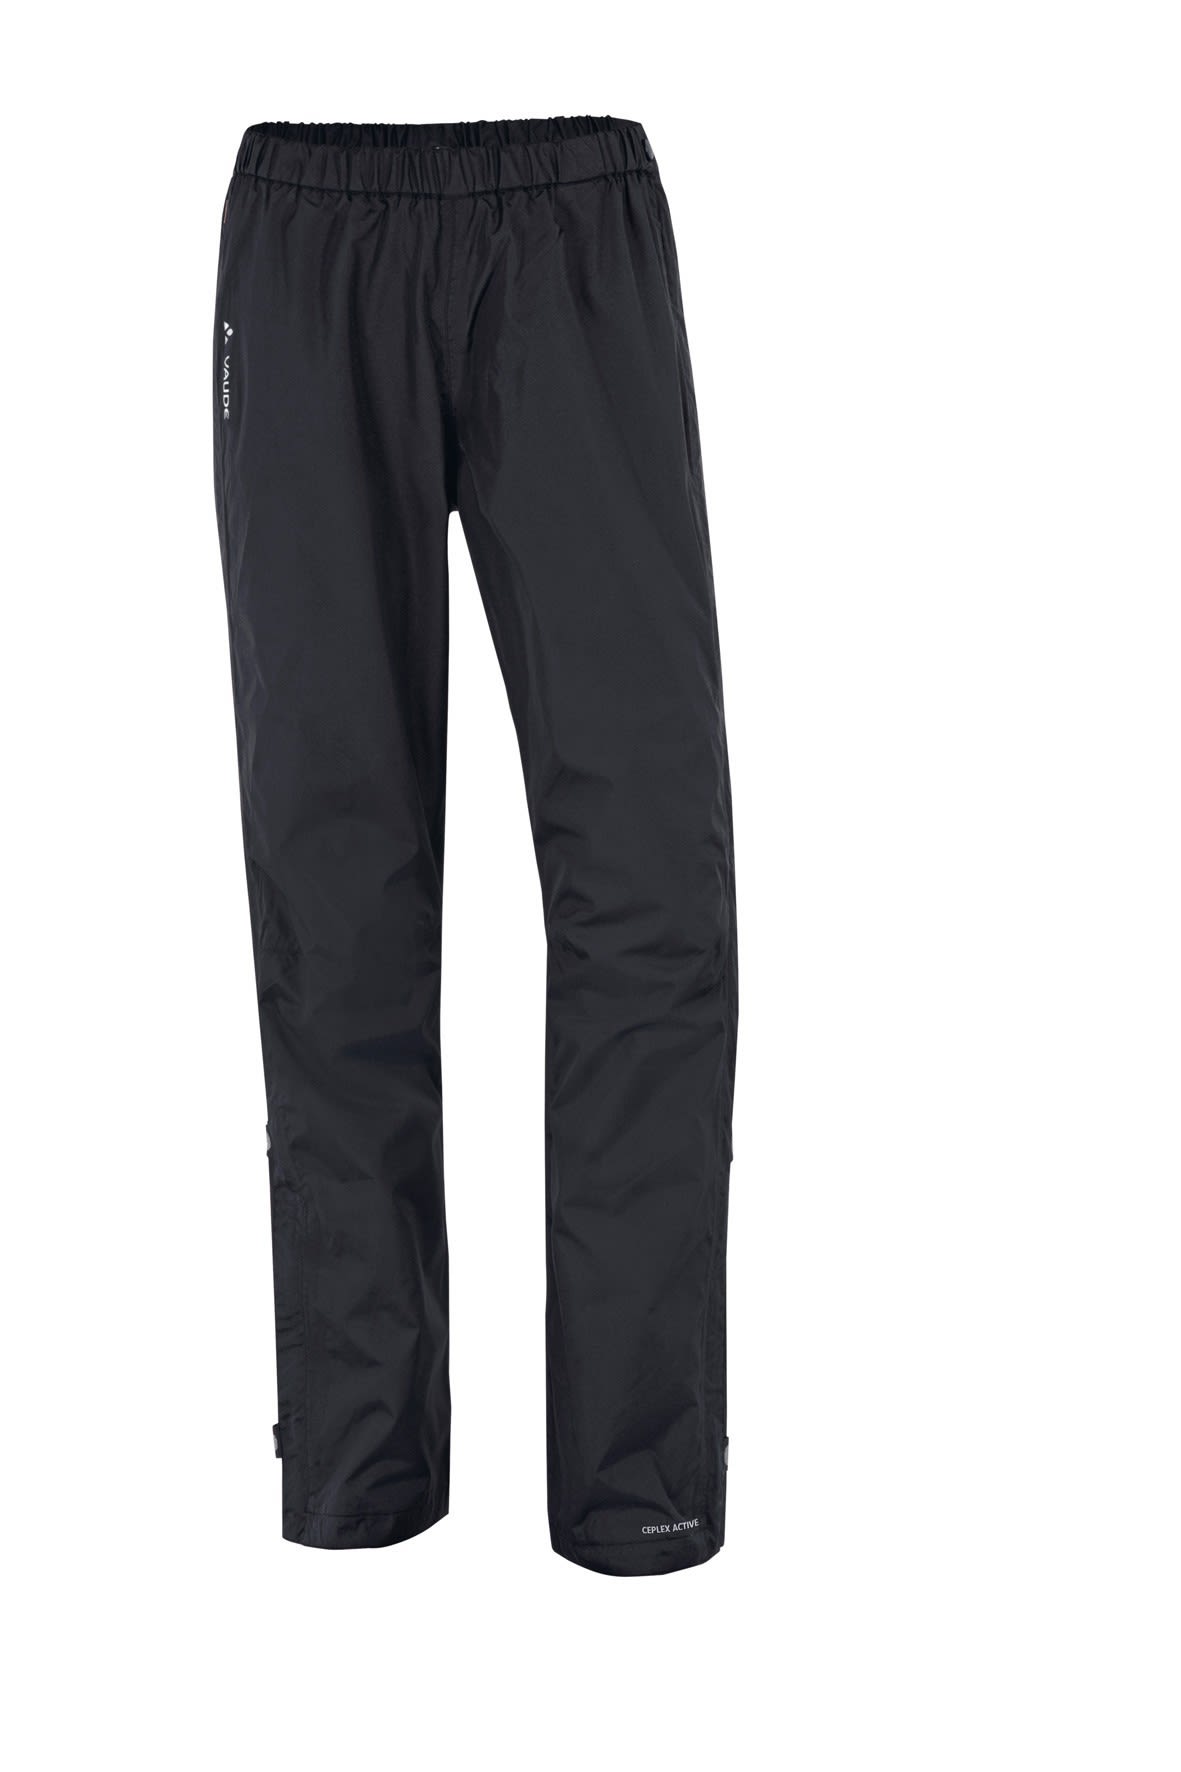 Vaude Fluid Full-Zip Pants Schwarz- Female Hosen- Grsse 36 - Short - Farbe Black